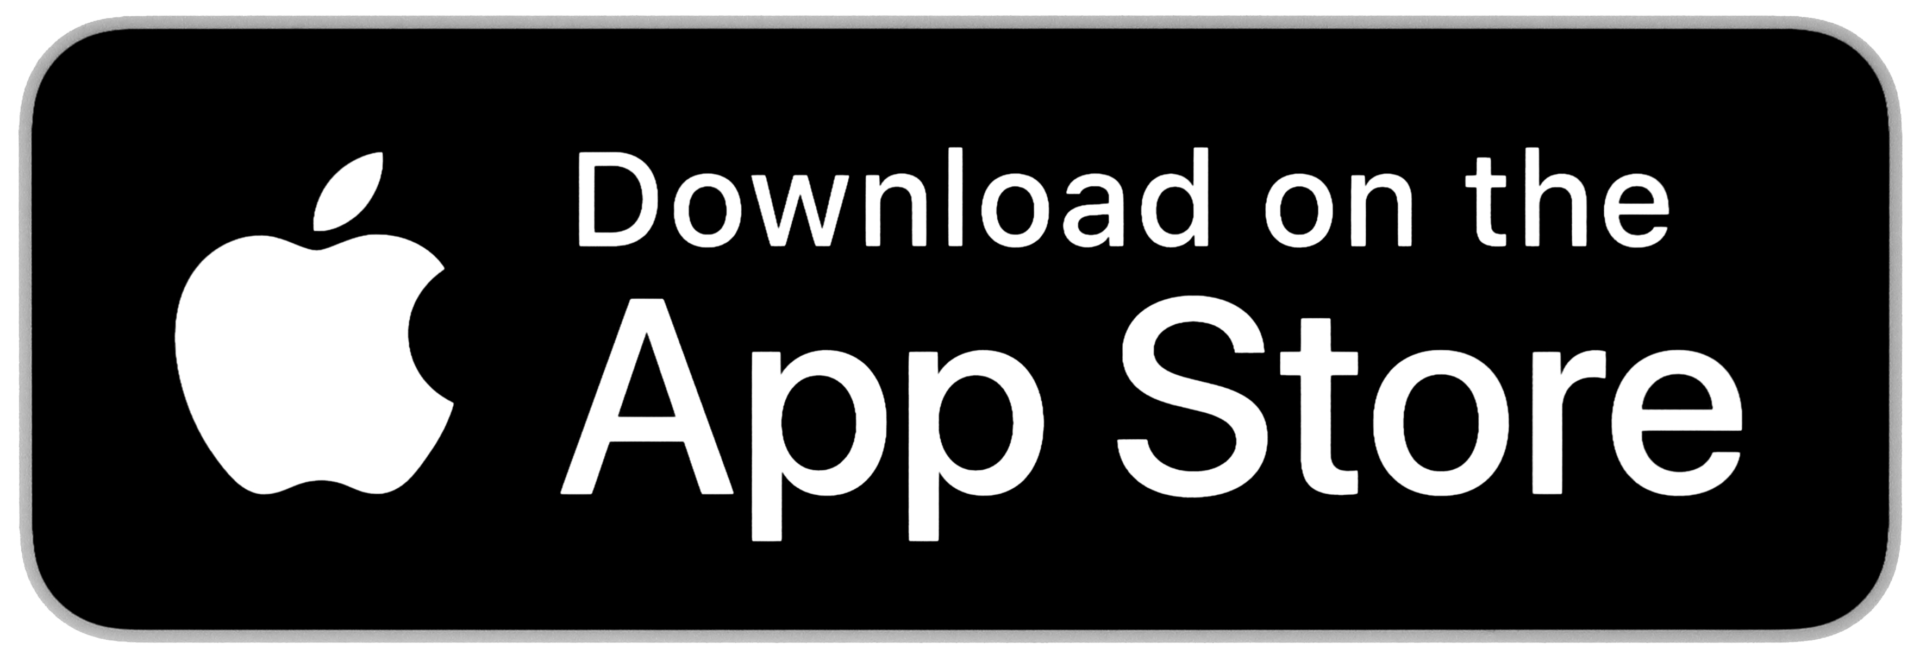 iOS-App-Store